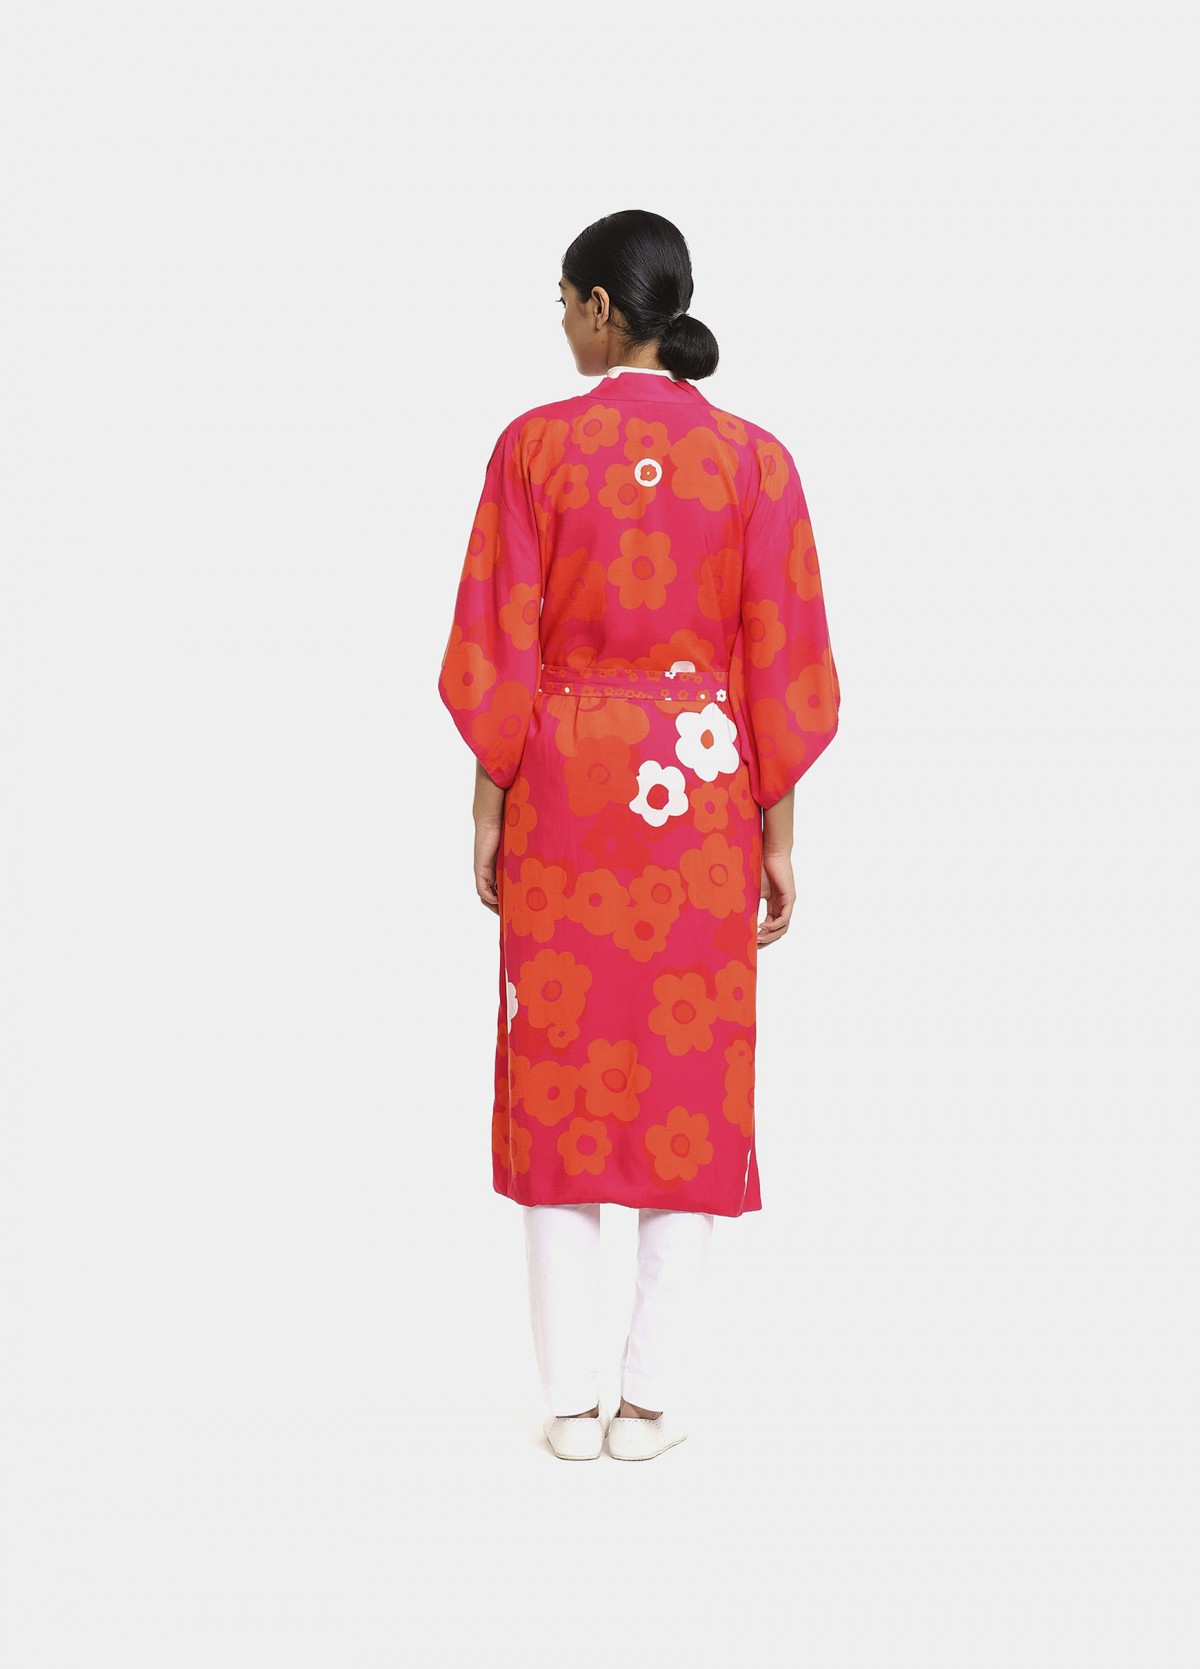 The Furano Kimono